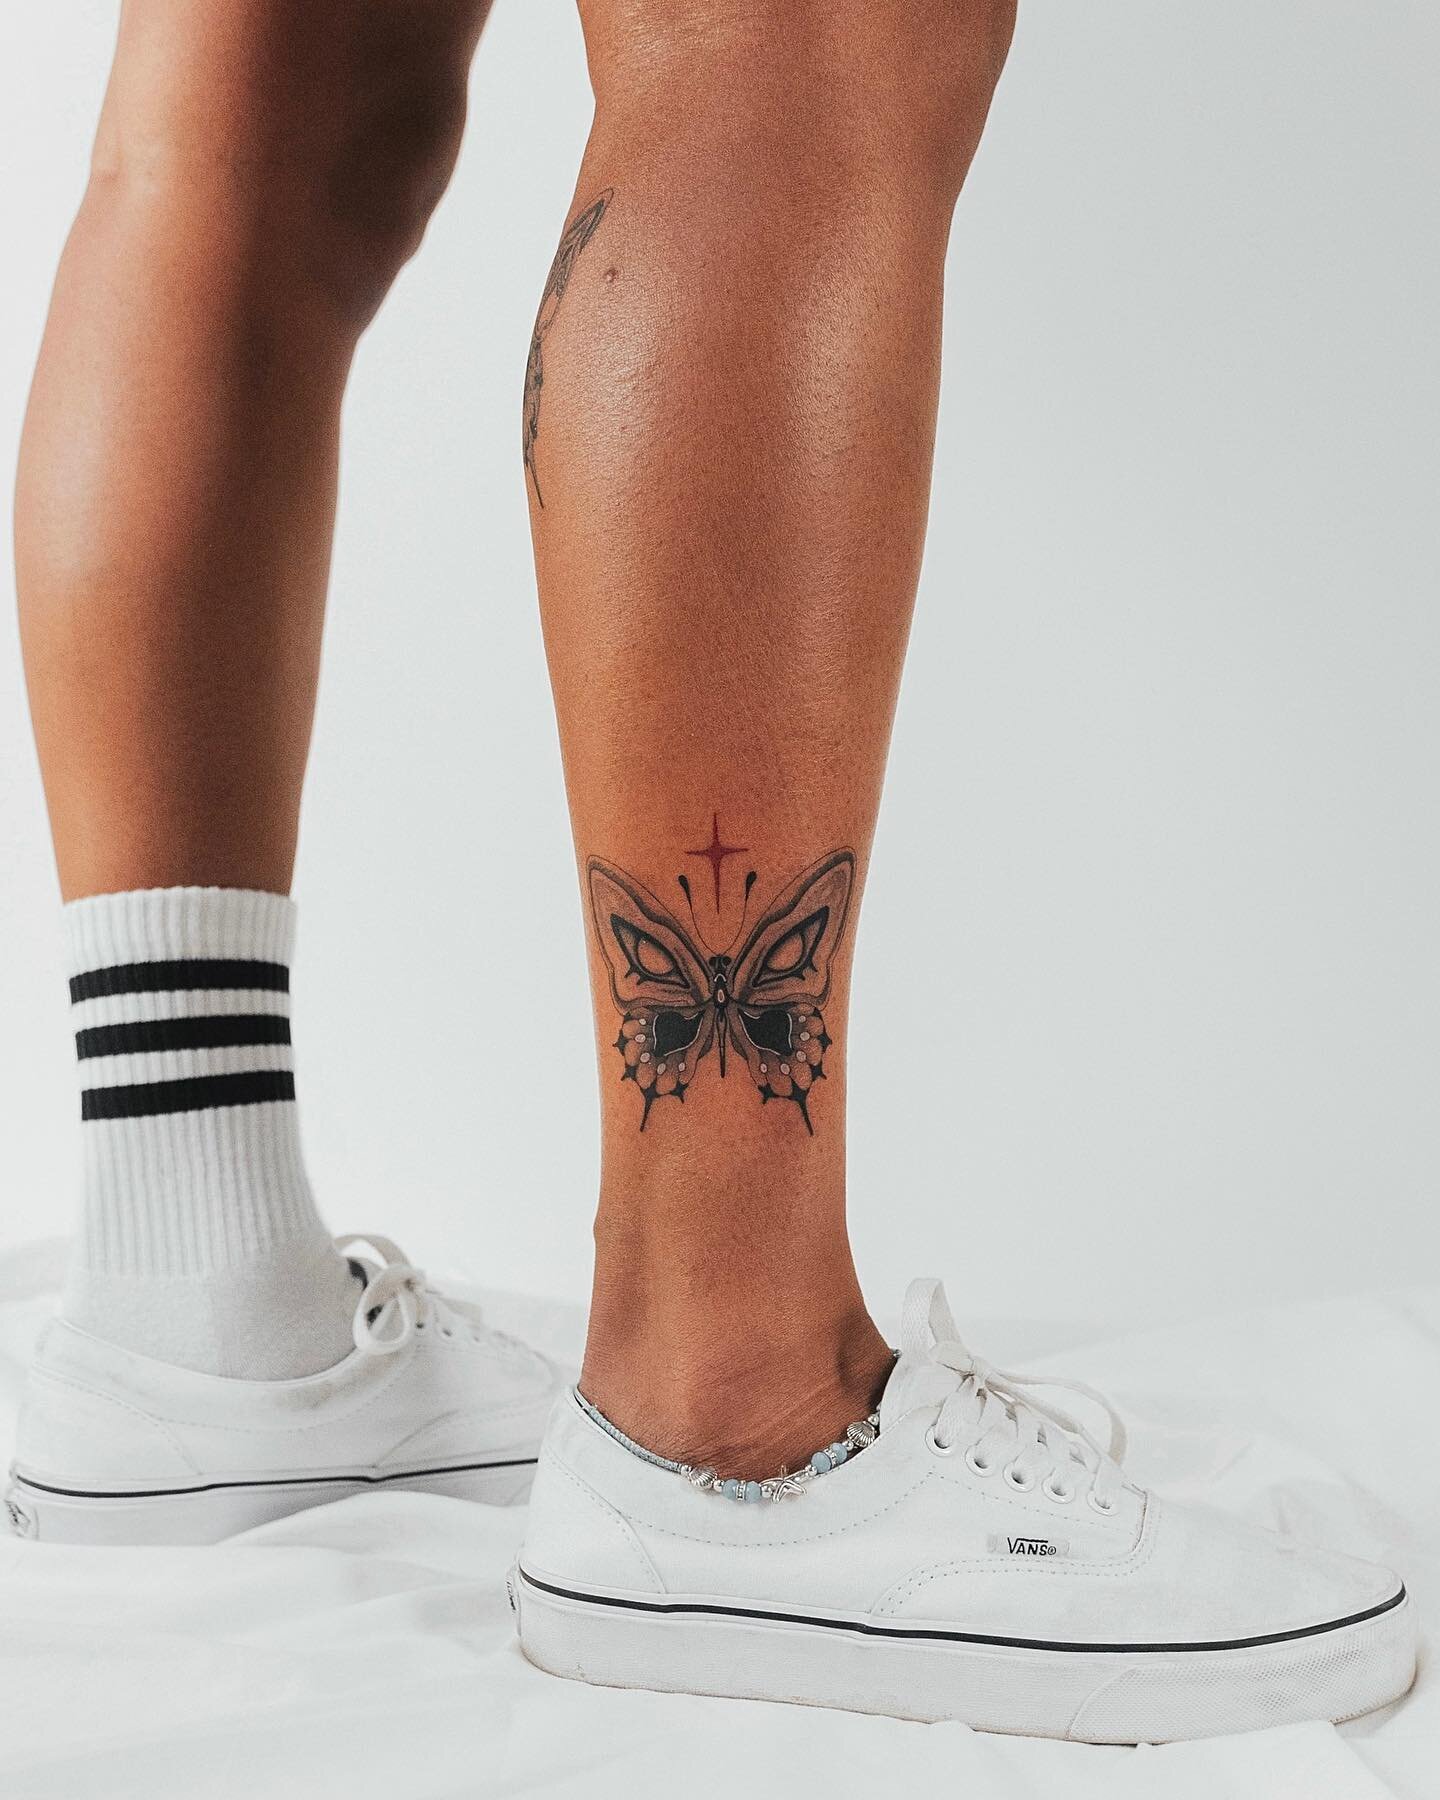 Thank you so much Kailyn🙏🏼🦋🖤
.
.
.
.
#tattoo #torontotattoo #ankletattoo #butterflytattoo #customtattoo unqiuetattoo #tattooart #ink #blackandredtattoo #tattoostyle #